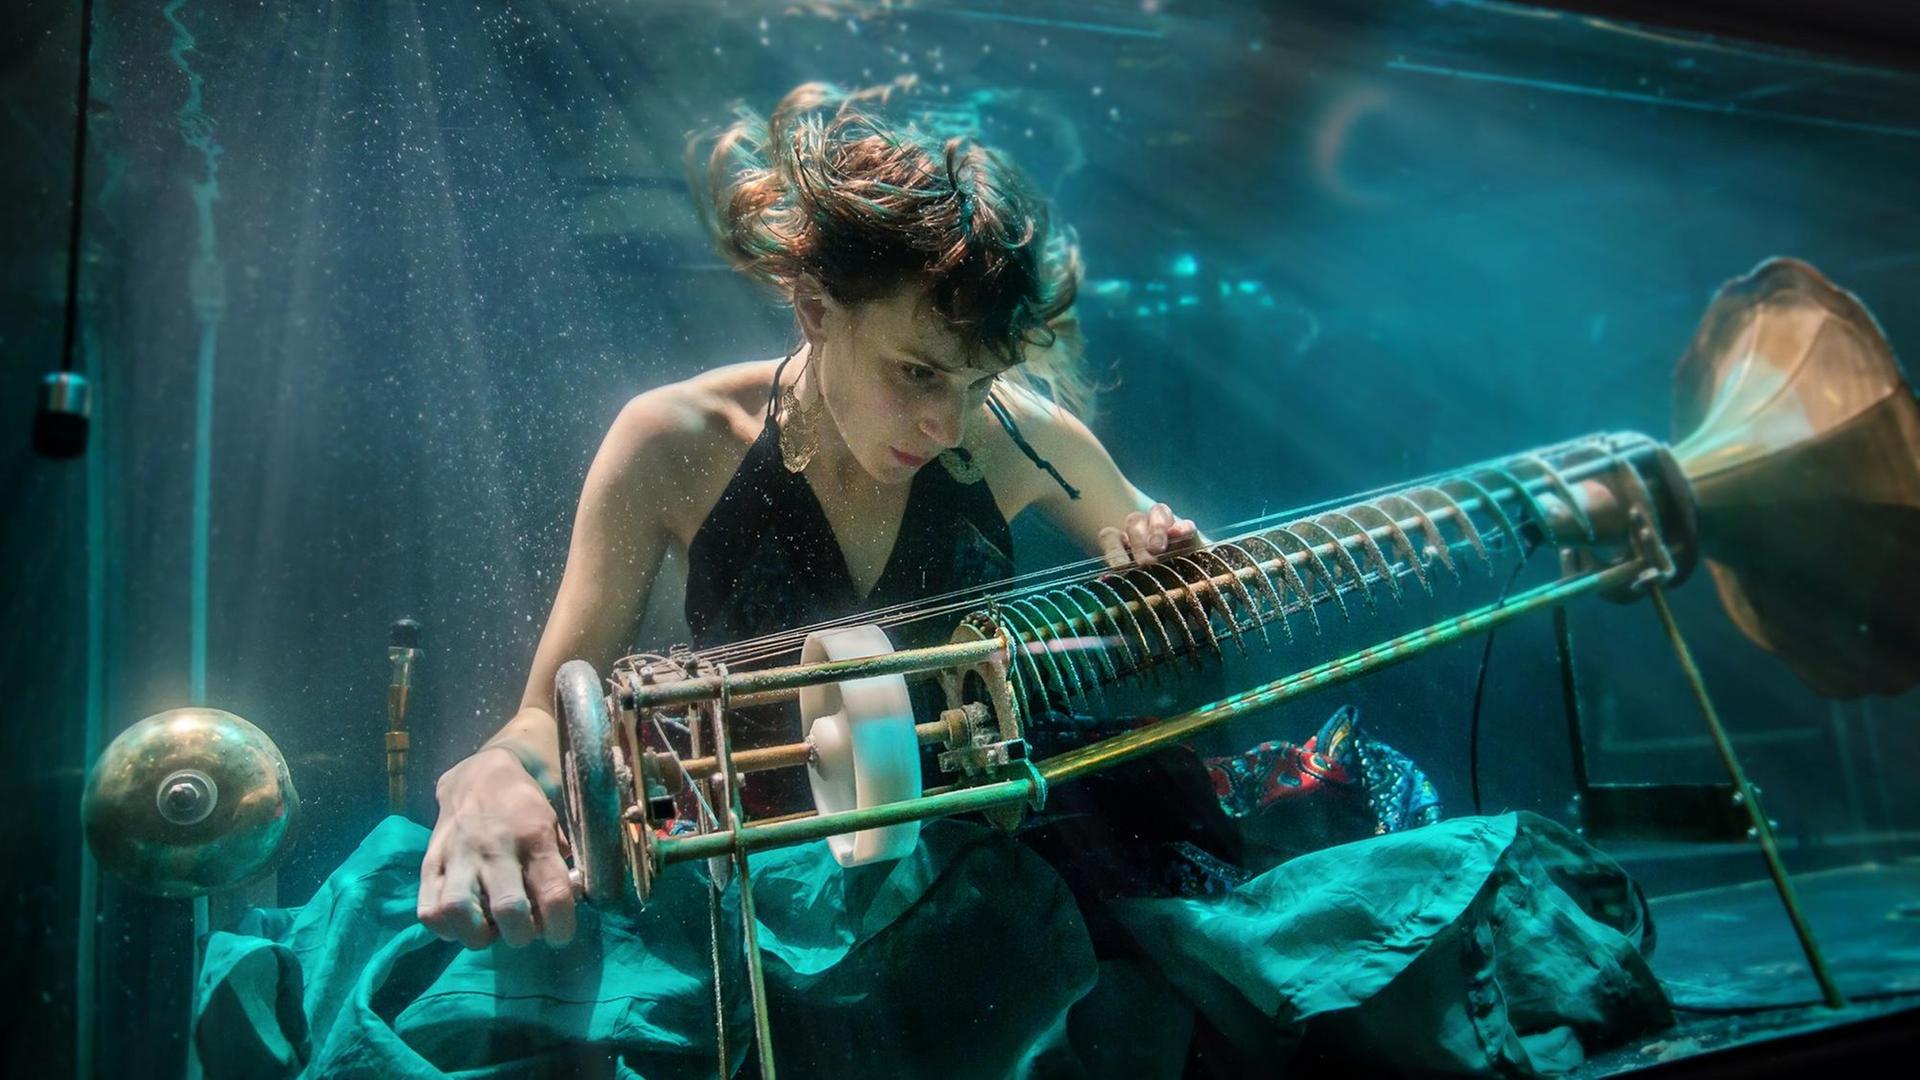 Die Künstlerin Nana Bech ist in einem Wasserbecken zu sehen. Sie spielt ein speziell konstruiertes Instrument namens Rotacorda. Links hat eine Kurbel, rechts einen Trichter wie vom Grammophon bekannt.